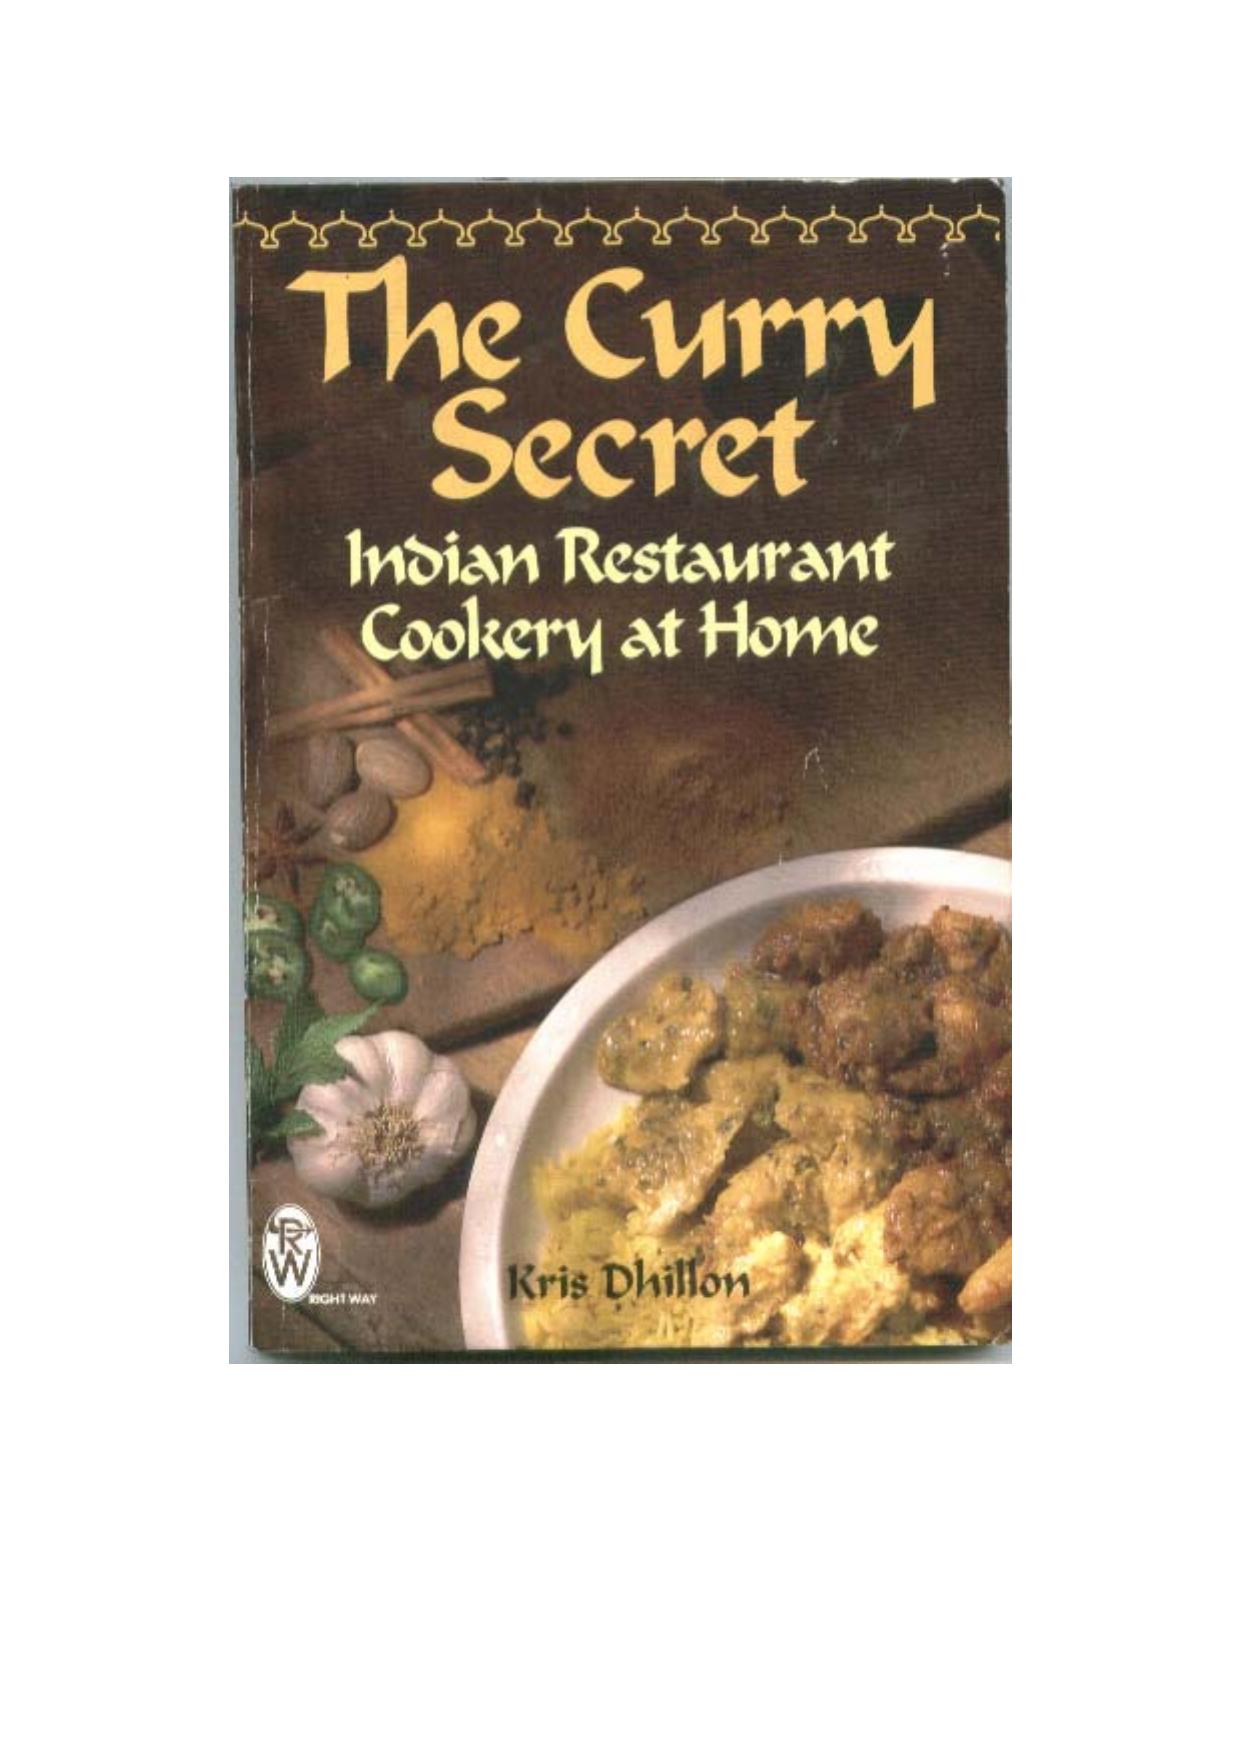 The Curry Secret by Kris Dhillon